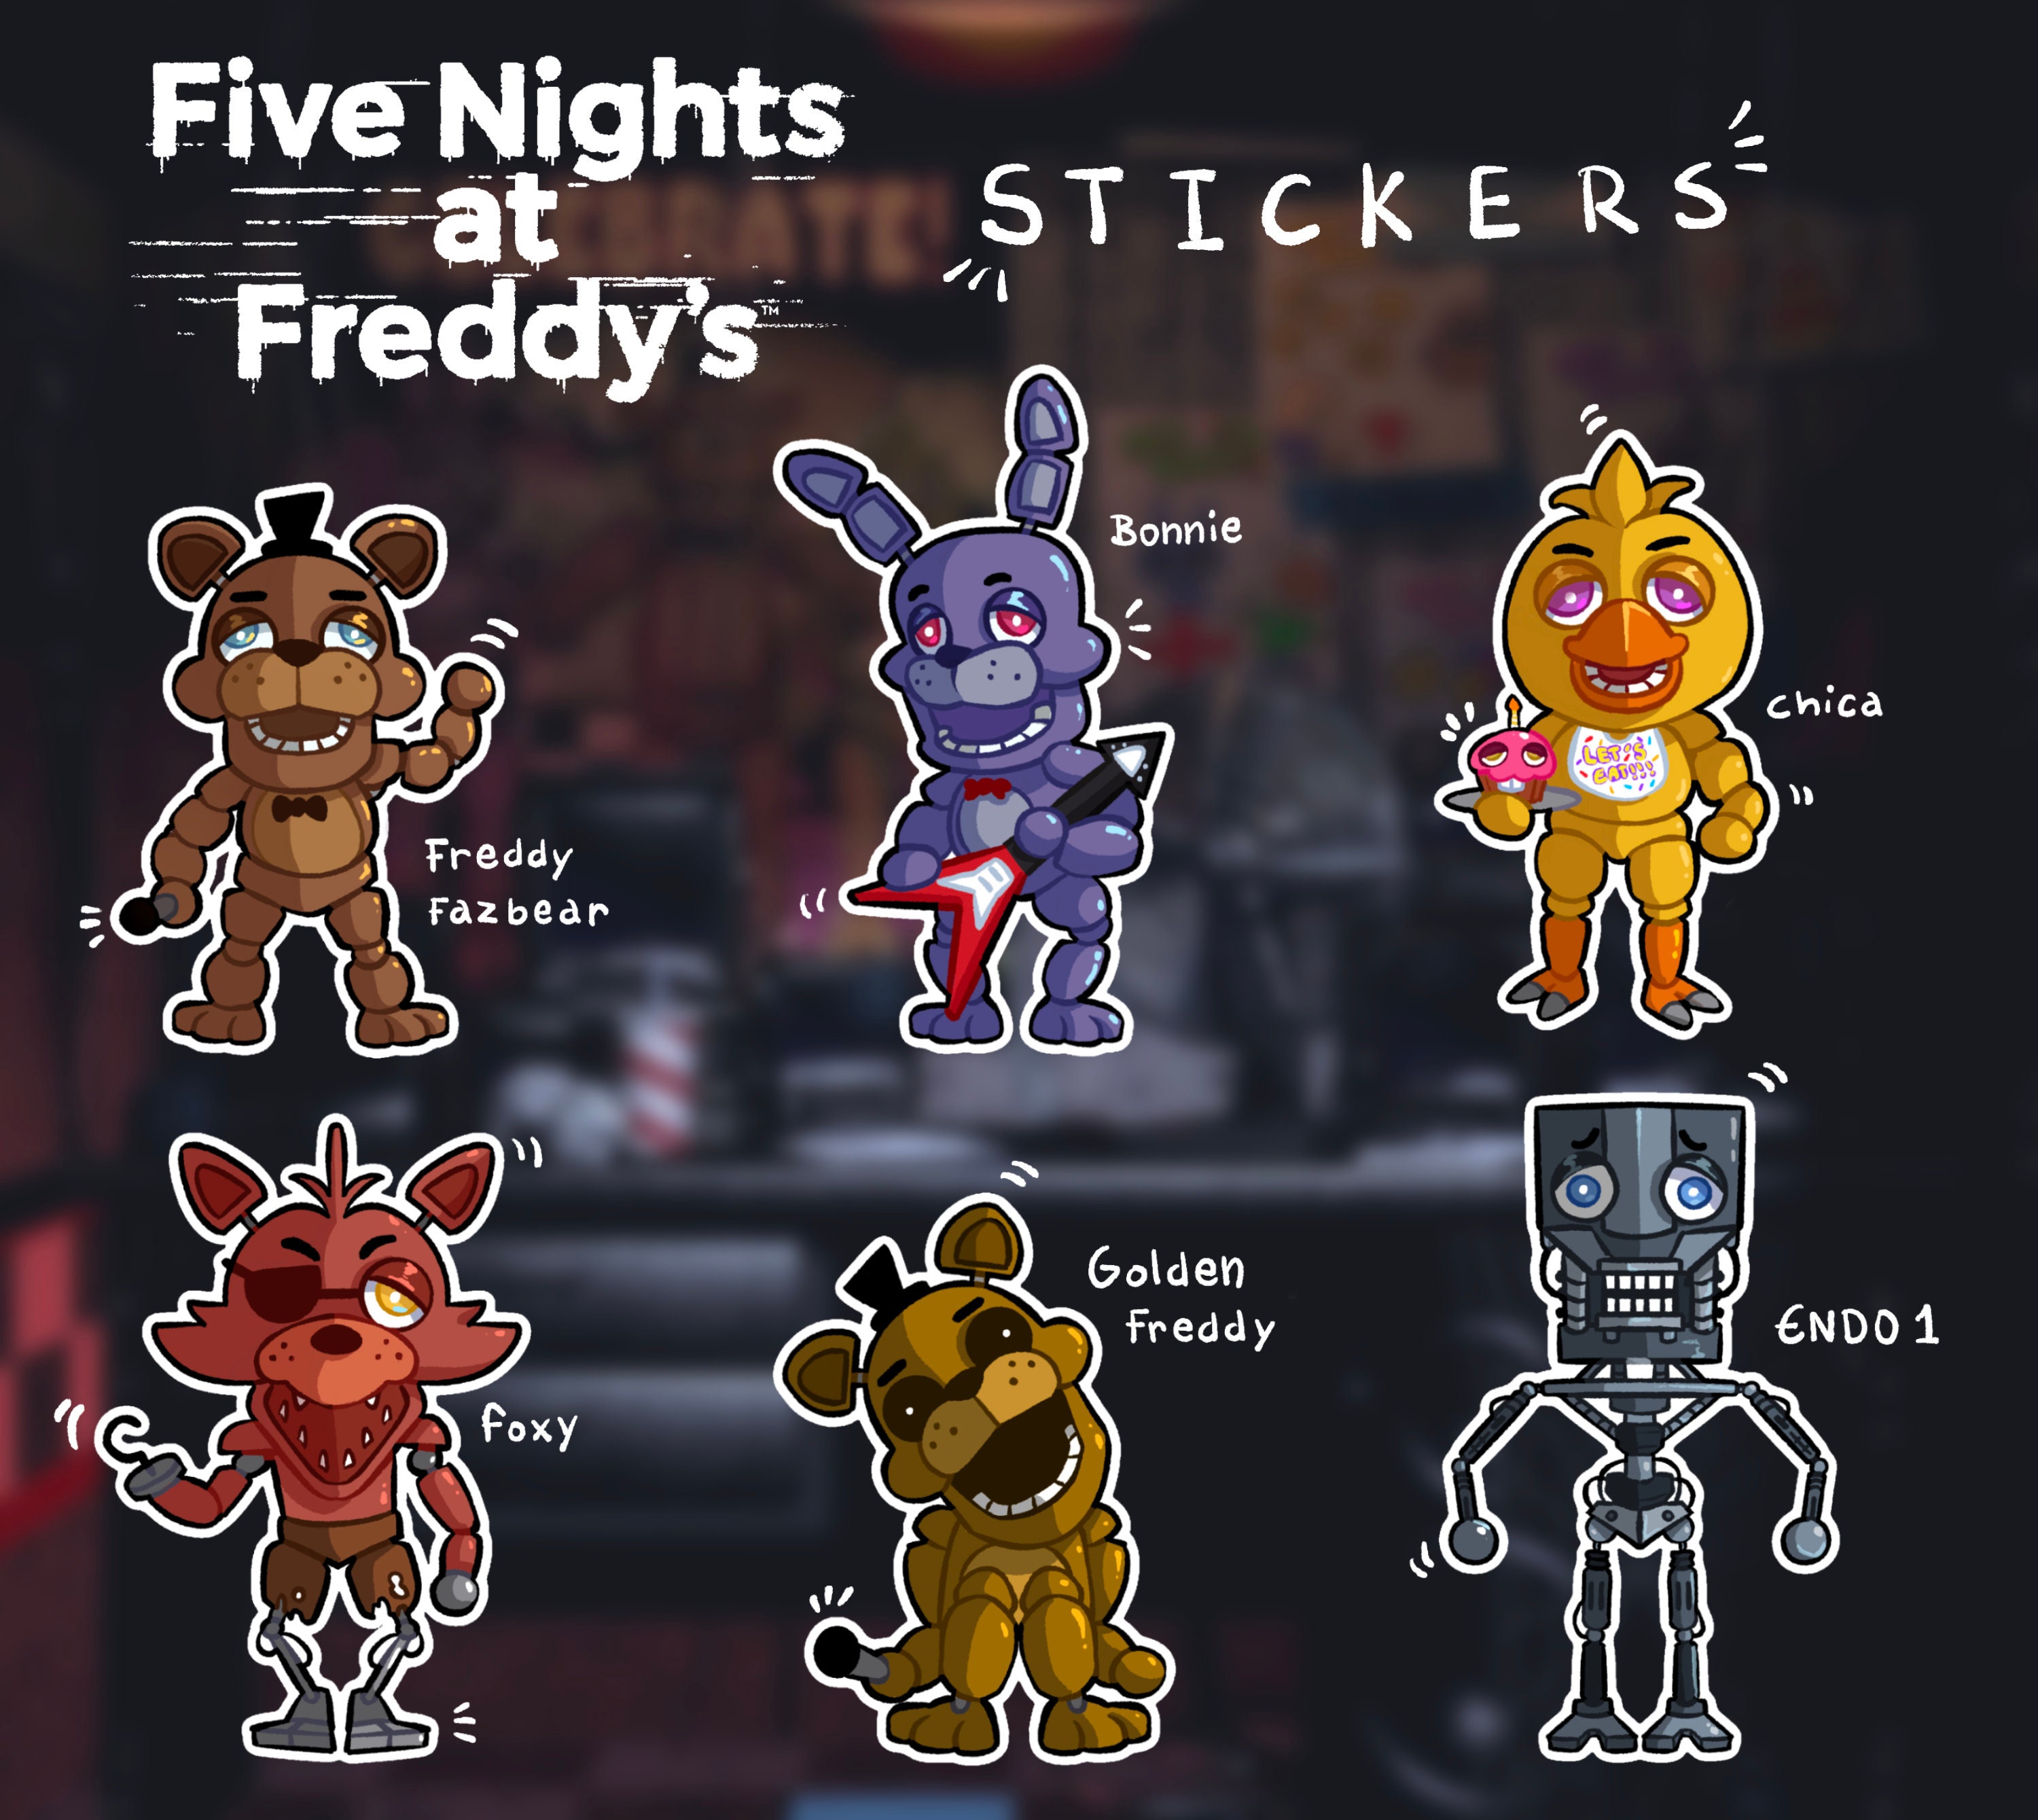 FNaF 1 Freddy Fazbear Head, Five Nights at Freddy's Pin by akushibluepaws